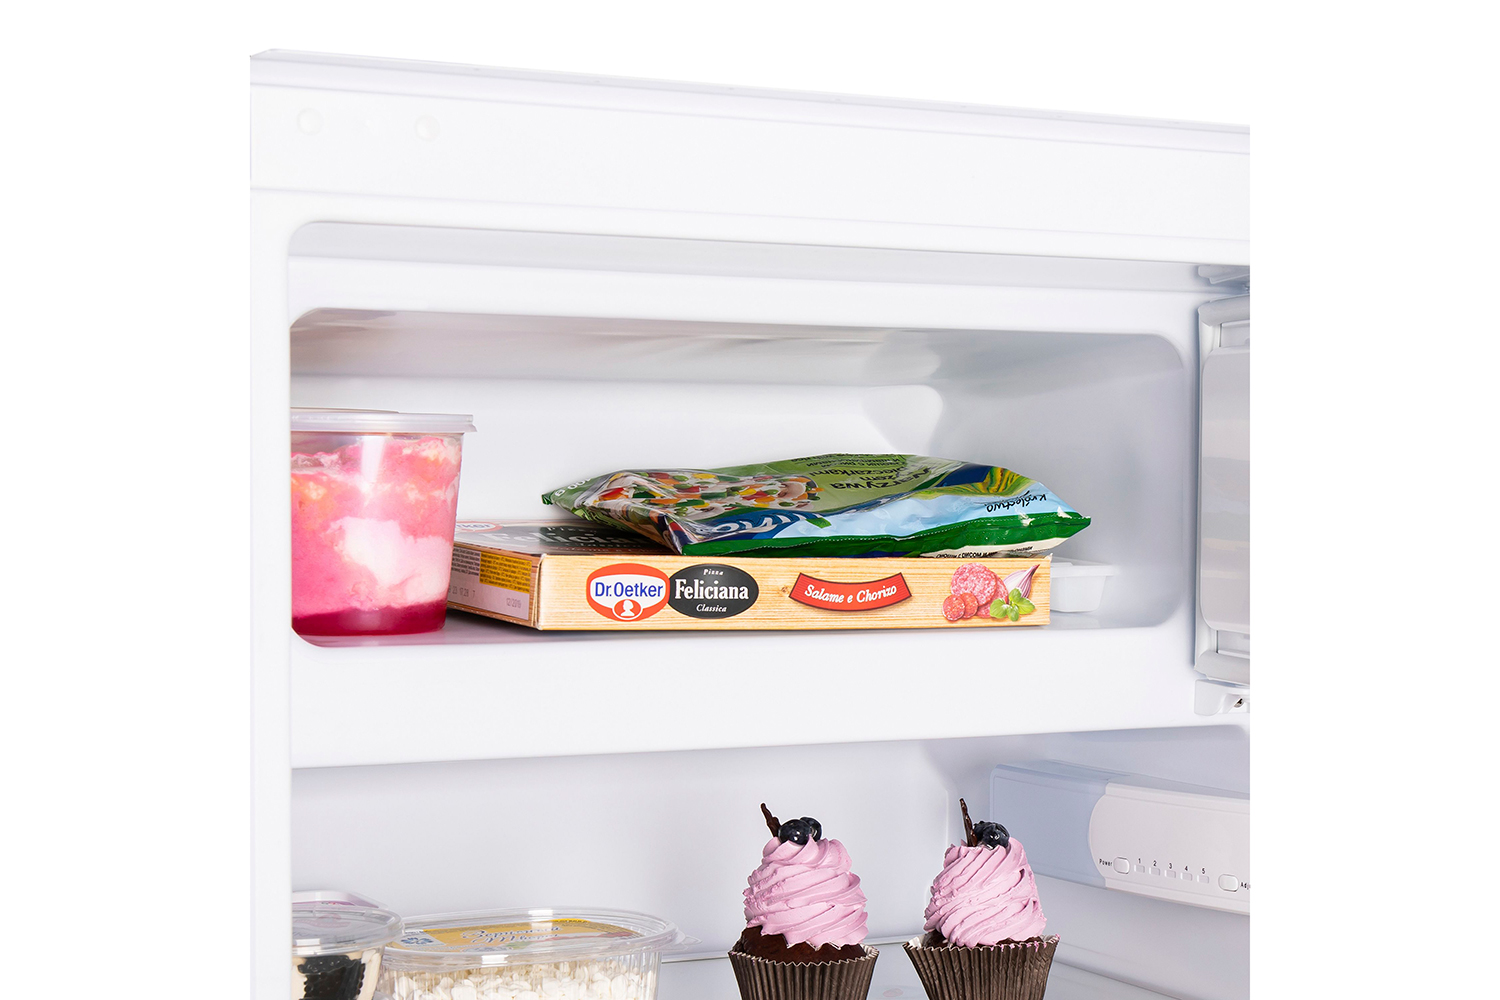 Холодильник MBF88SW